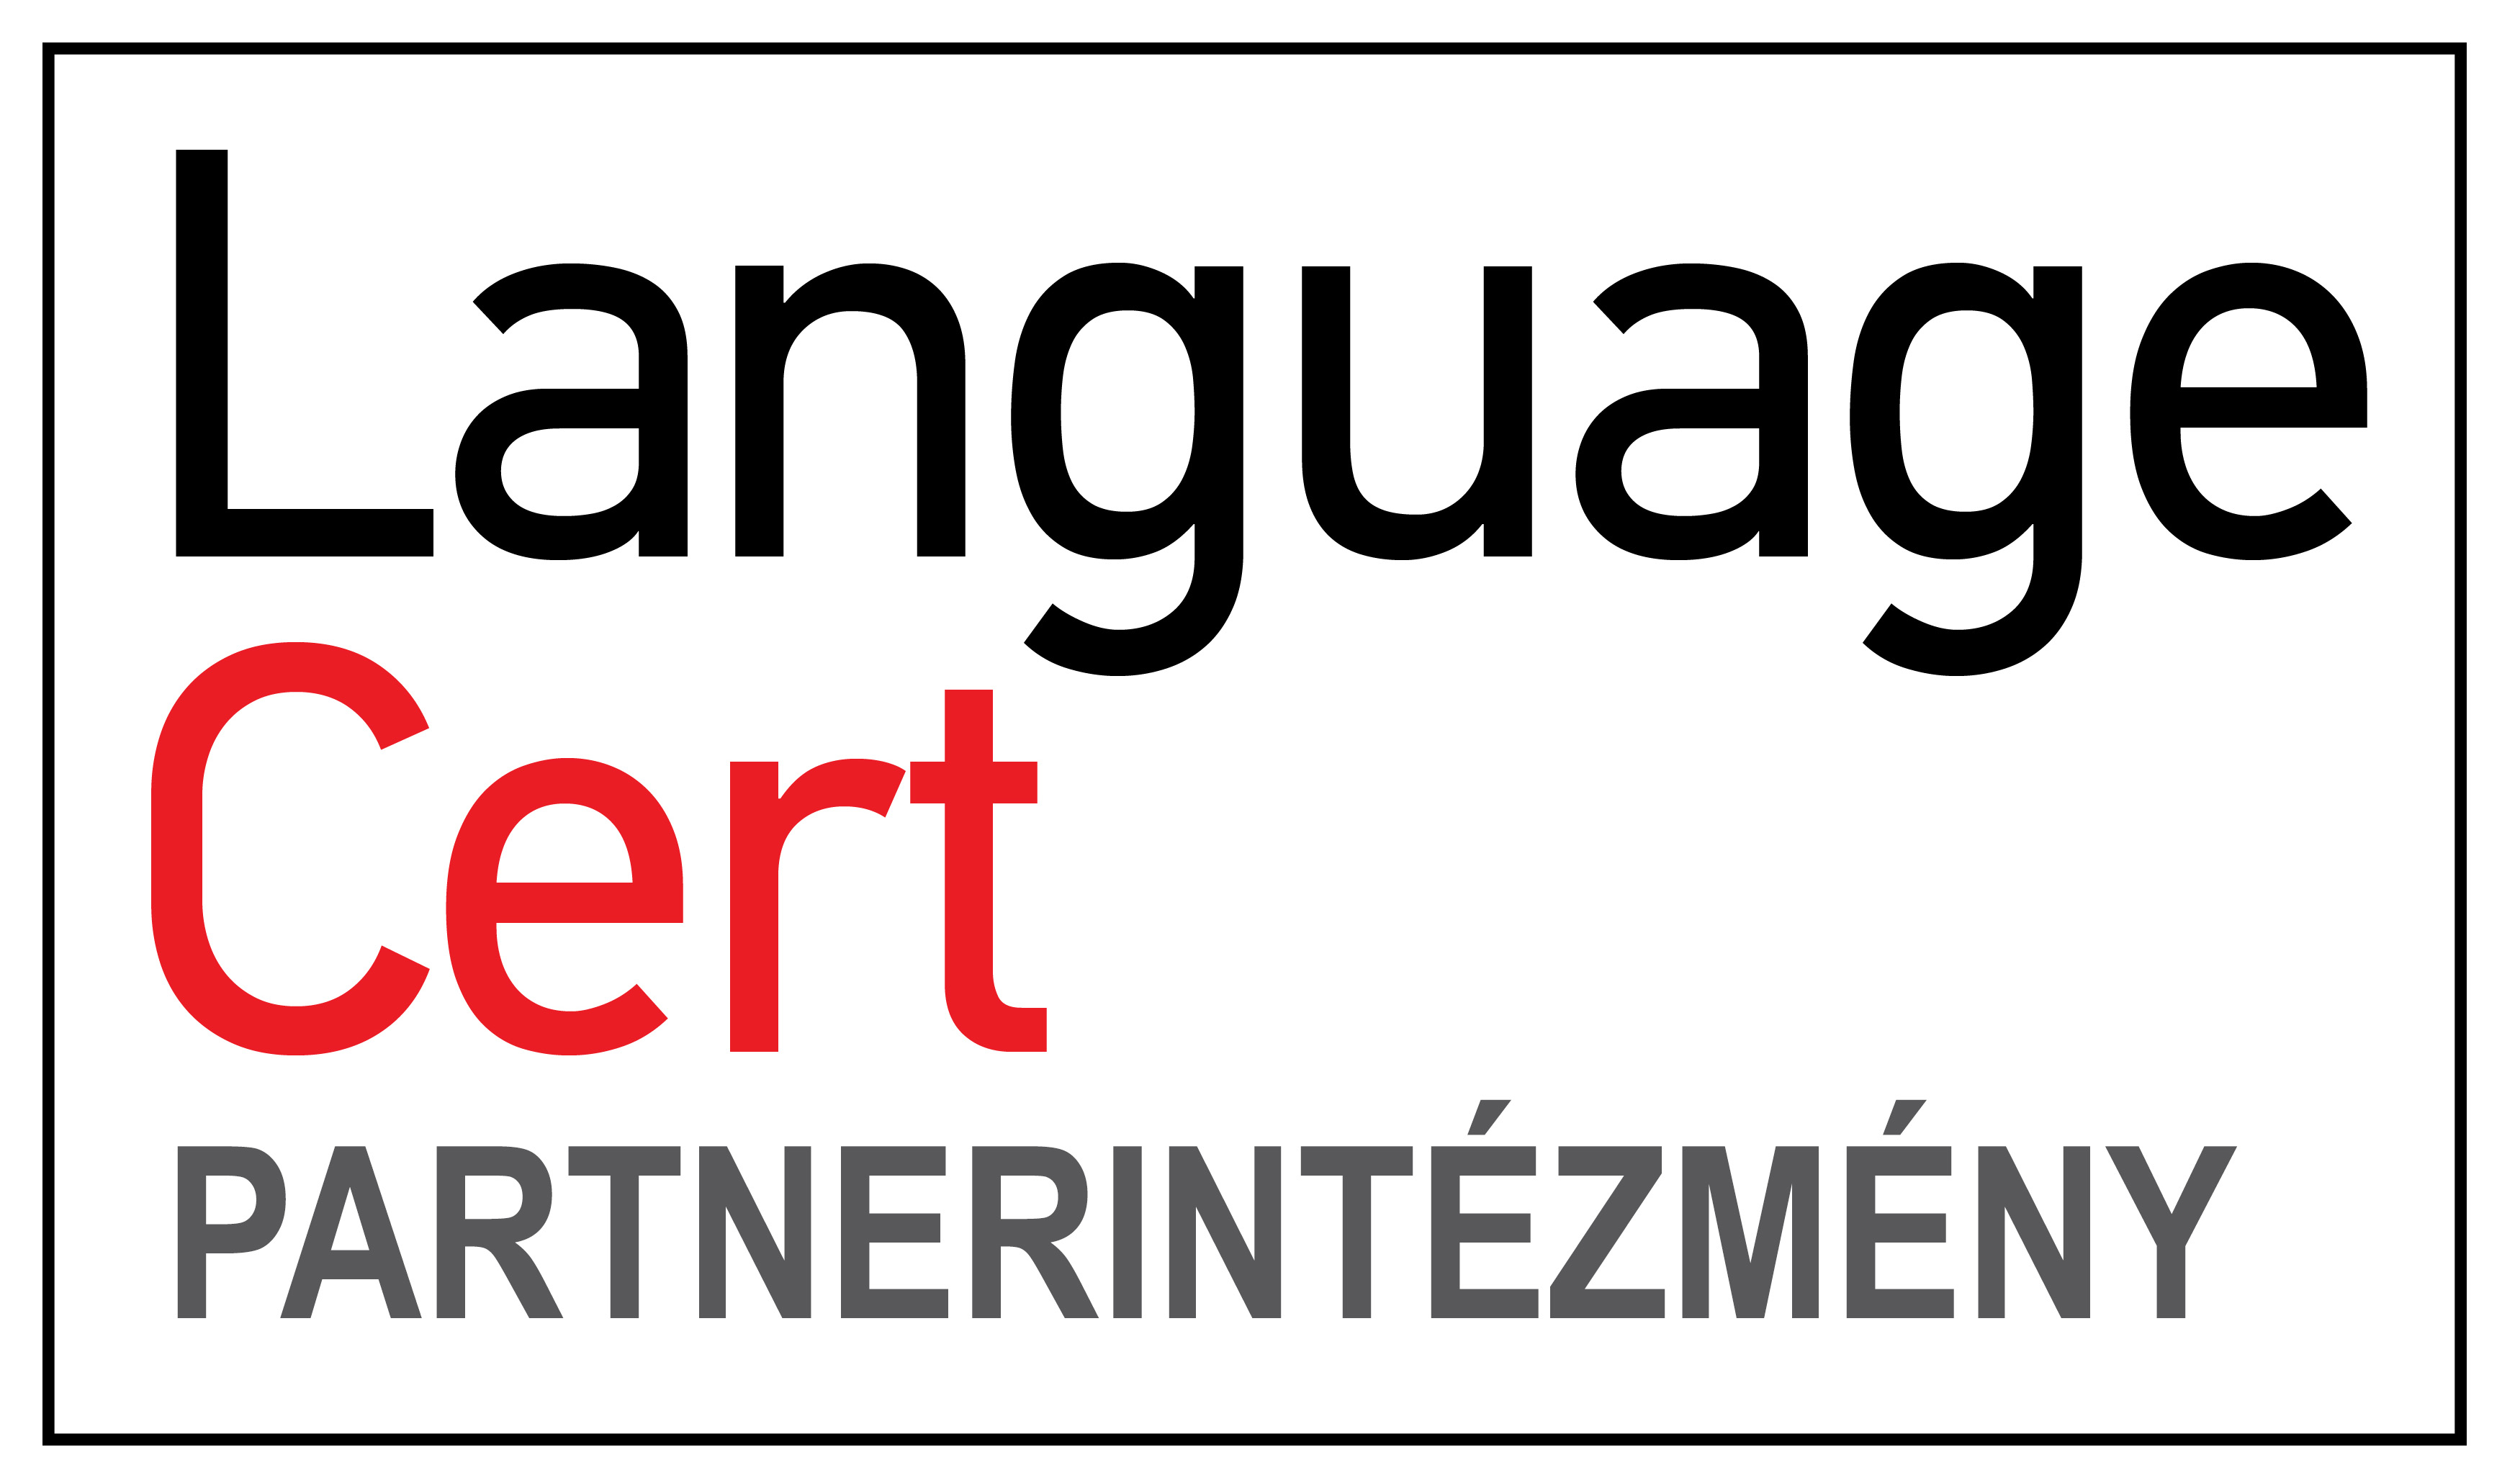 languagecert_partnerintezmeny_logo_v2.jpg